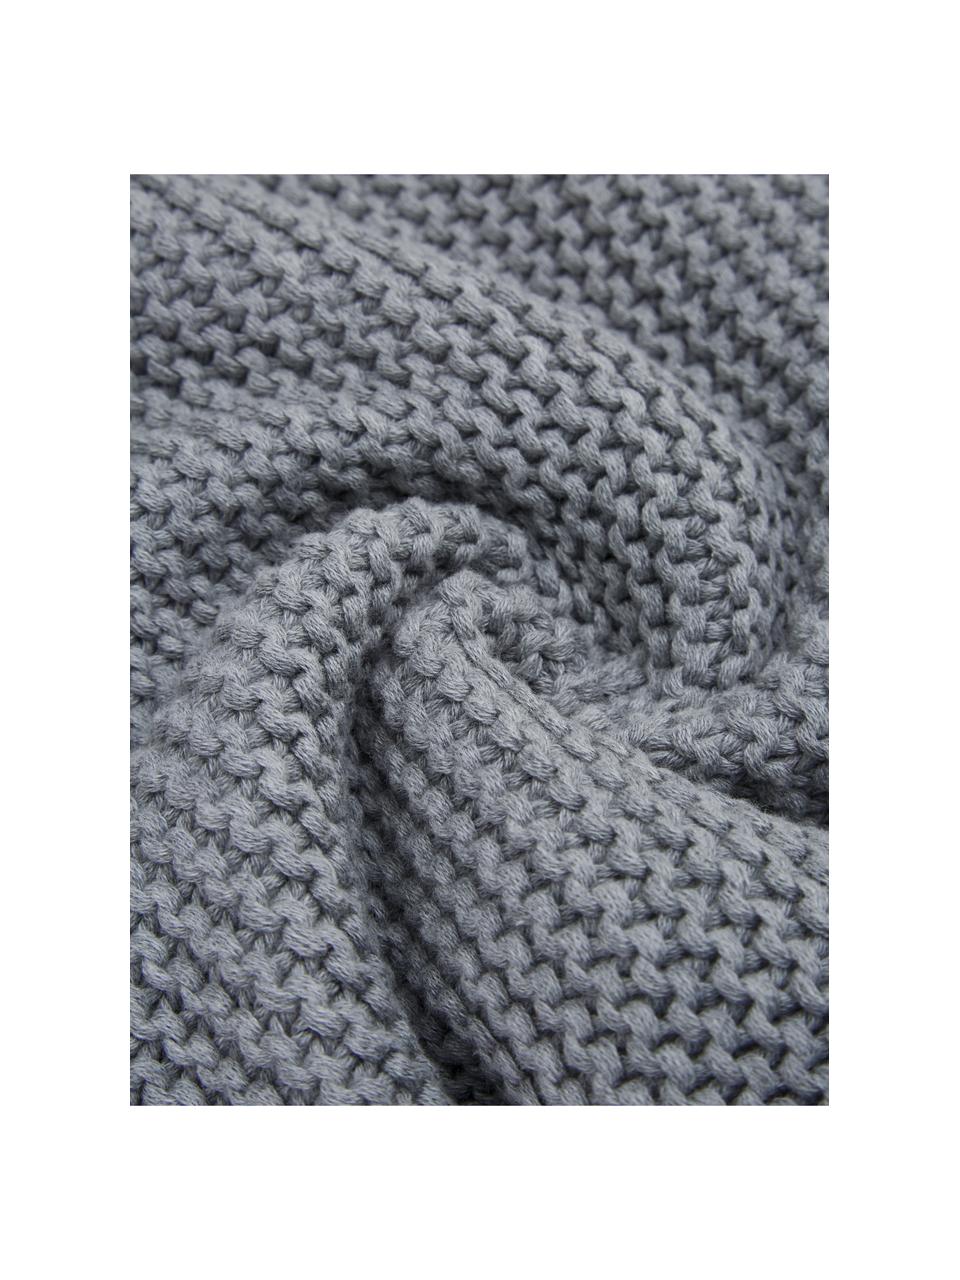 Coperta a maglia in cotone biologico grigio Adalyn, 100% cotone biologico, certificato GOTS, Grigio, Larg. 150 x Lung. 200 cm